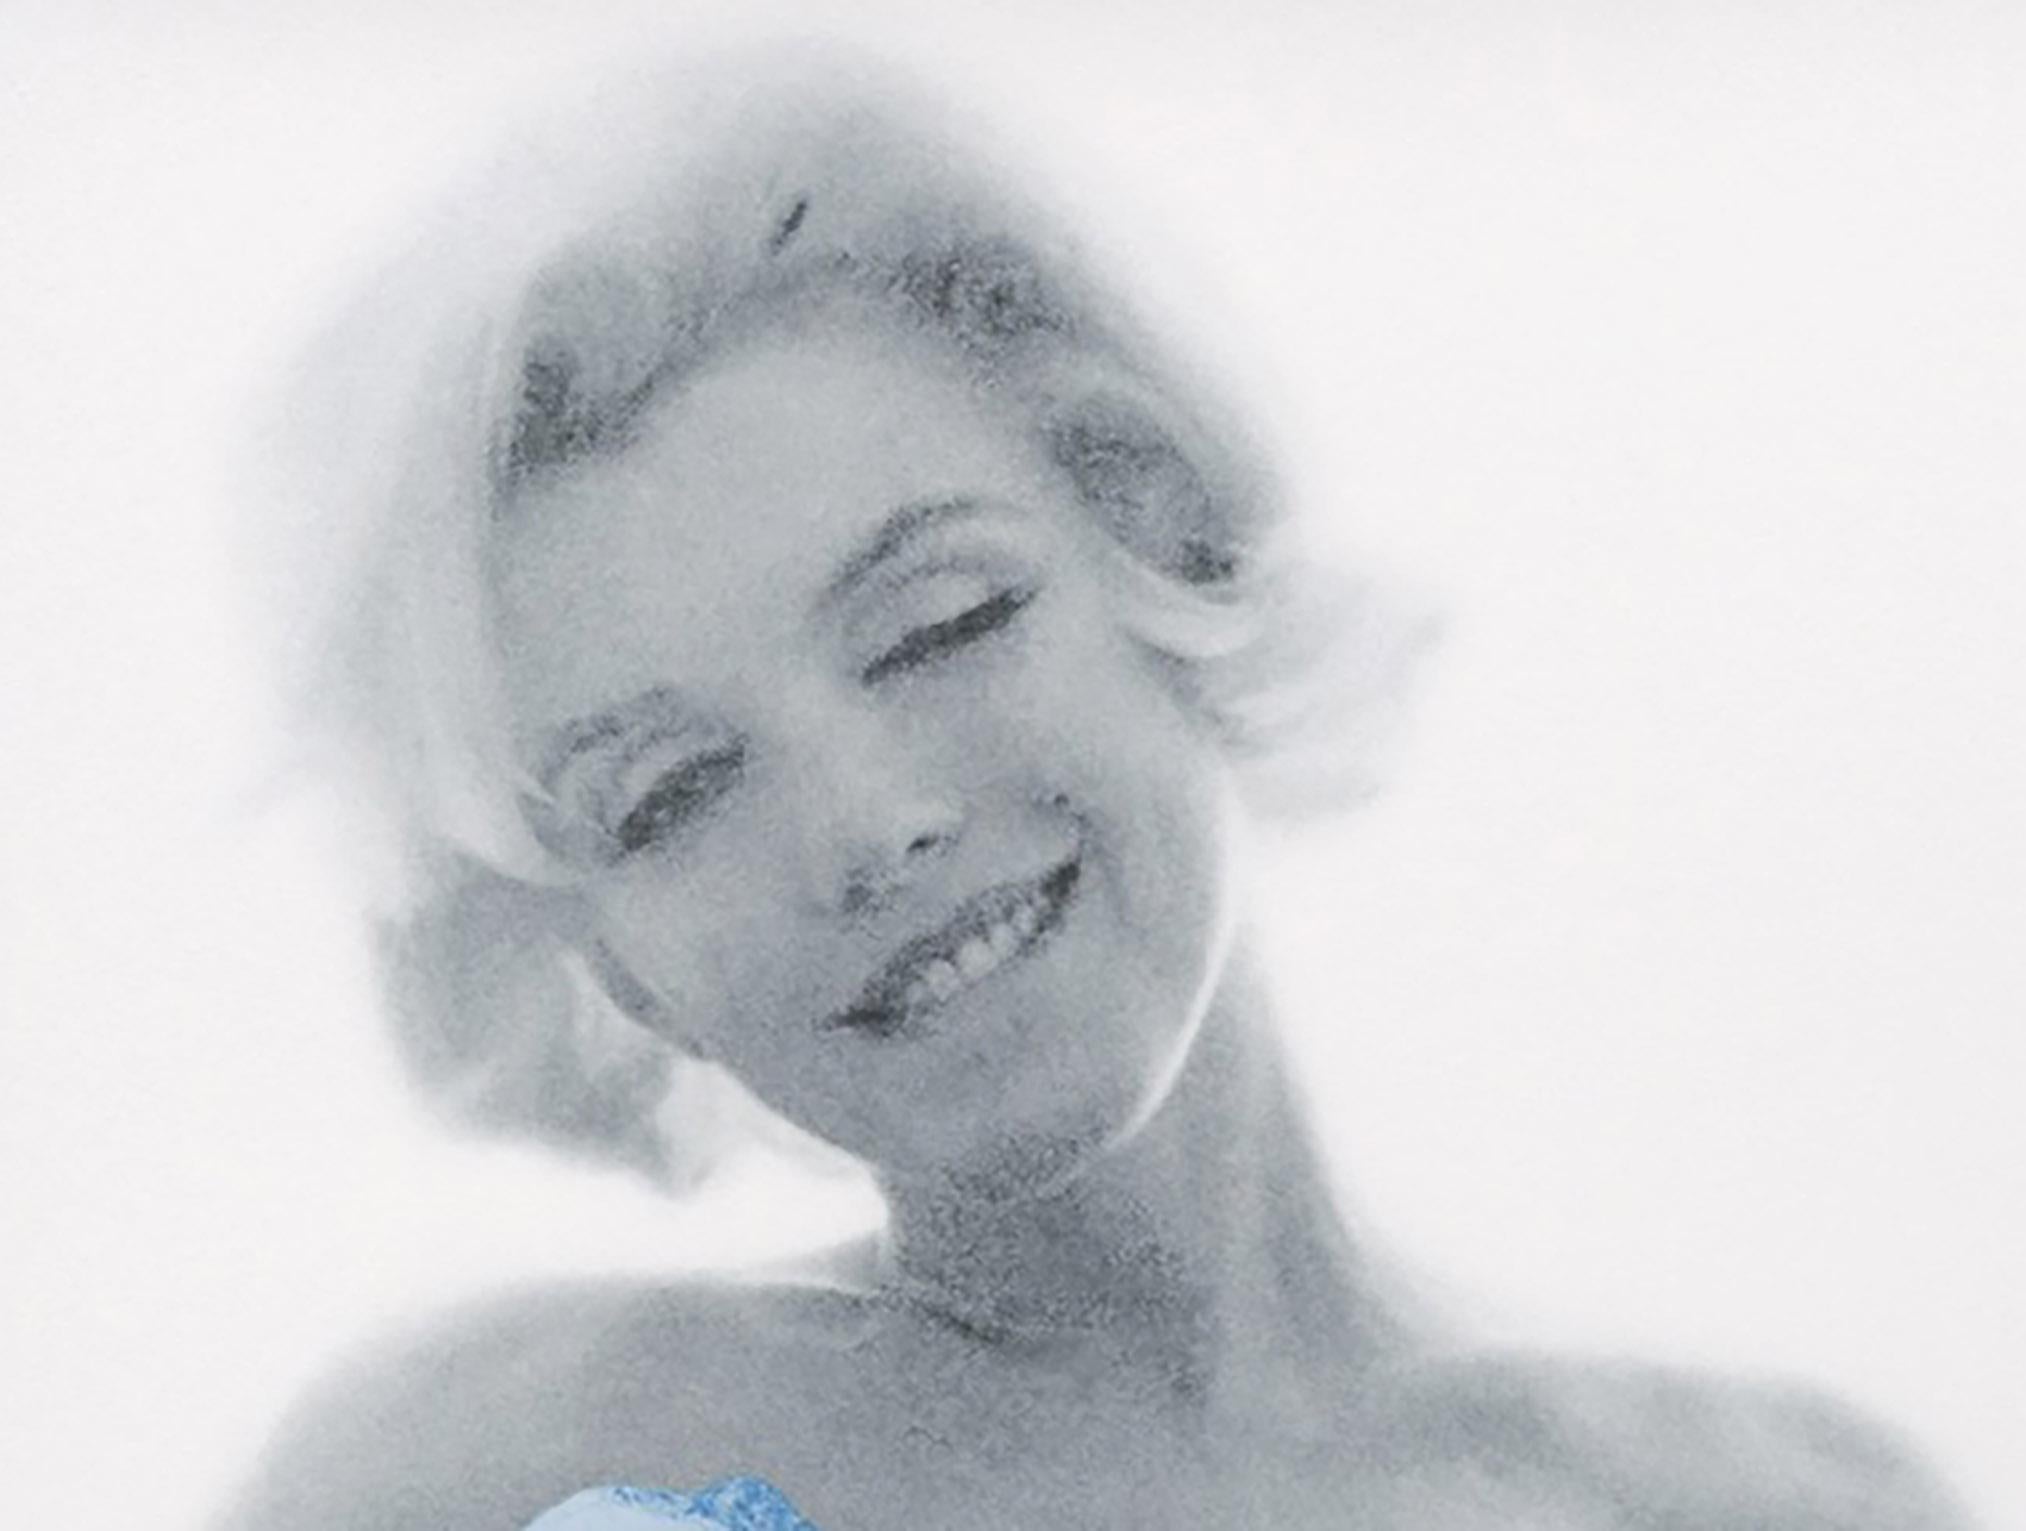 Bert stern
Roses clin d'œil bleu Marilyn   
Photo mythique de la dernière séance (1962)
Impression à jet d'encre par Bert Stern
2012
signé des deux côtés 
certificat signé par l'artiste de son vivant
copie unique
25 X 41 cms
parfait état 
jamais